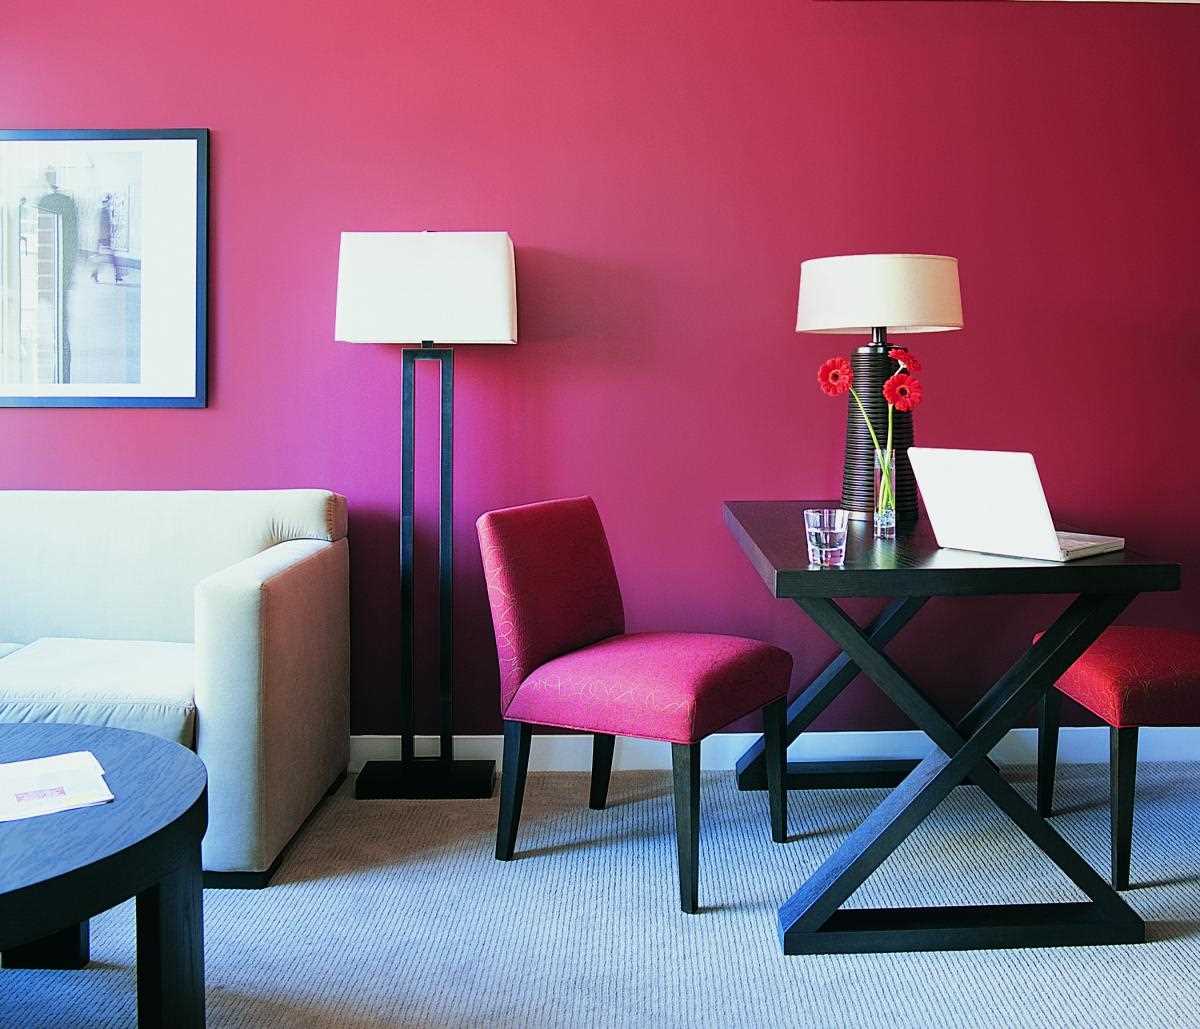 Un esempio di utilizzo del rosa in un interno luminoso dell'appartamento